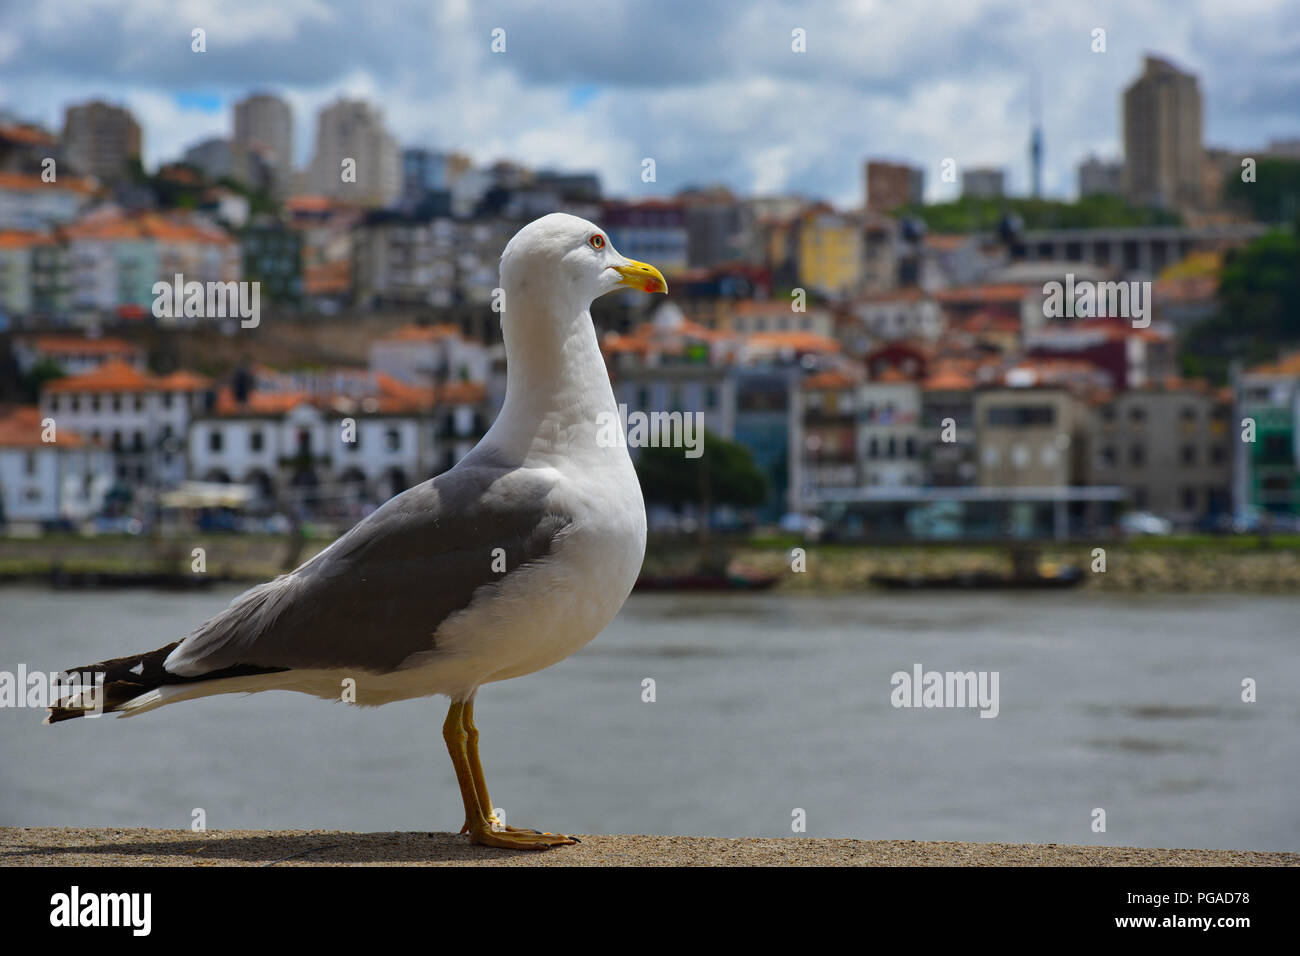 A sea gull / seagull enjoying live near river Douro in Porto, Portugal. Stock Photo